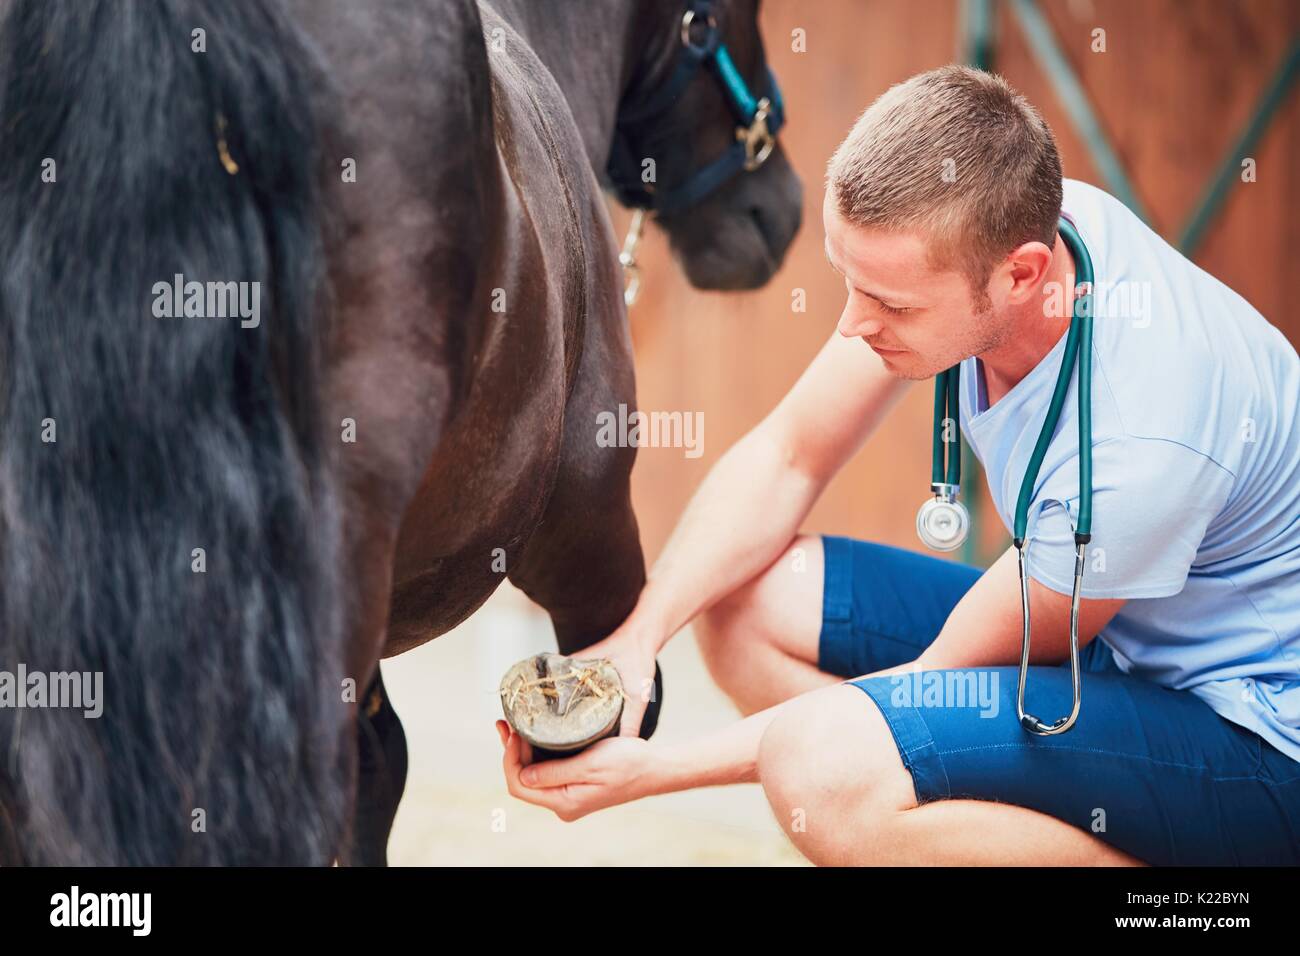 Veterinary medicine at the farm. Veterinarian examining horse leg. Stock Photo